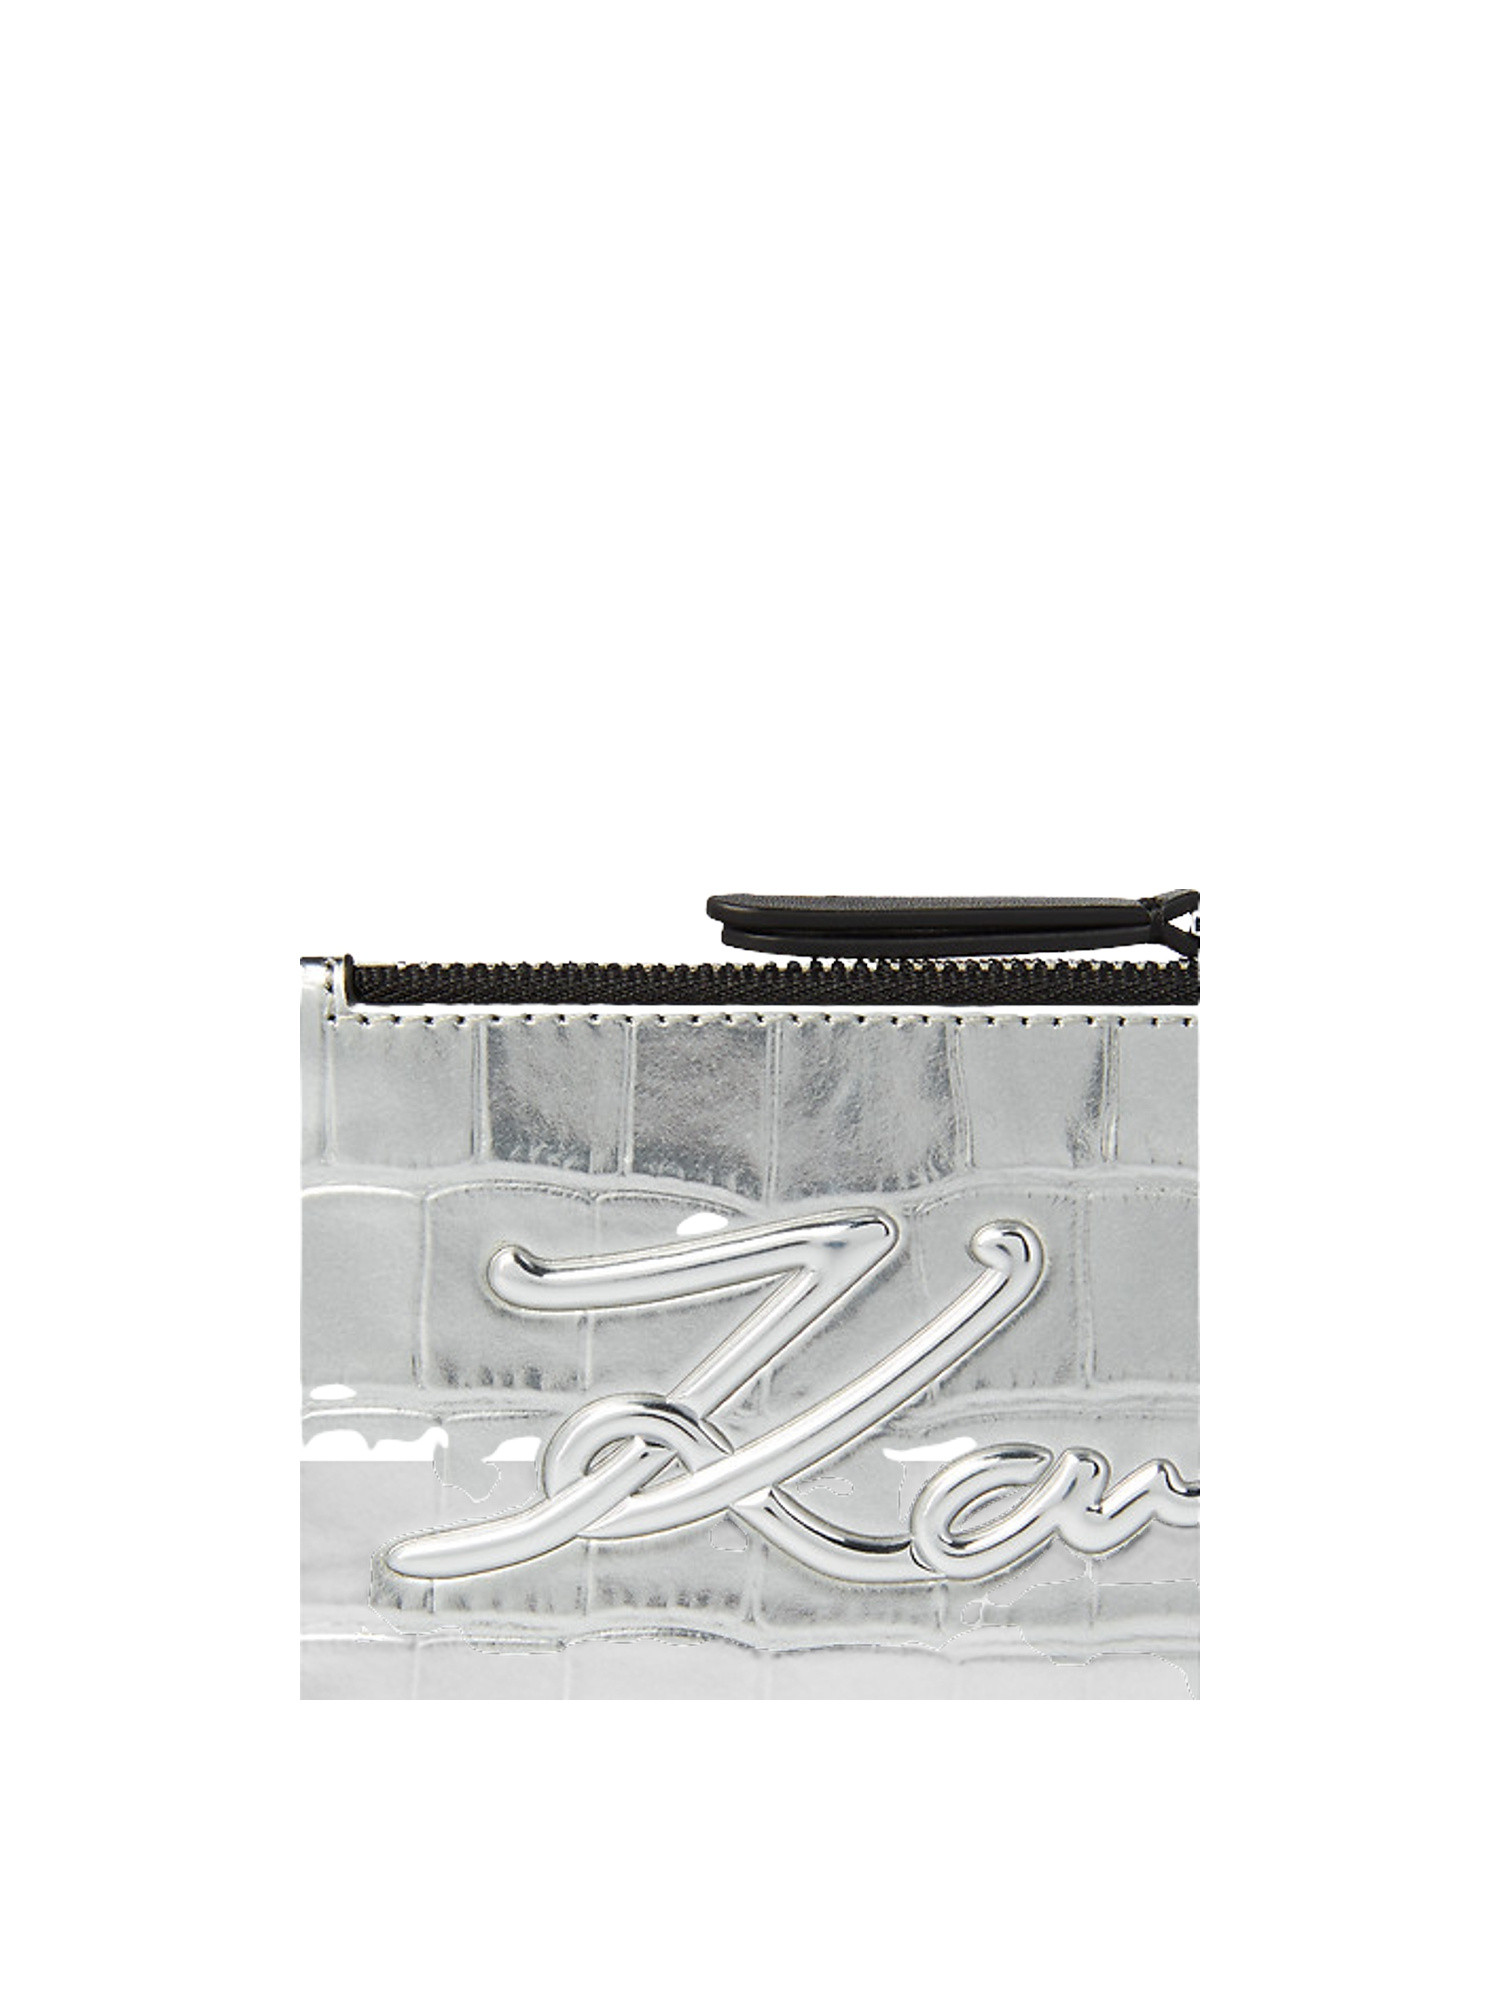 Karl Lagerfeld - K/signature porta carte di credito goffrato effetto coccodrillo con chiusura superiore a zip, Grigio argento, large image number 2